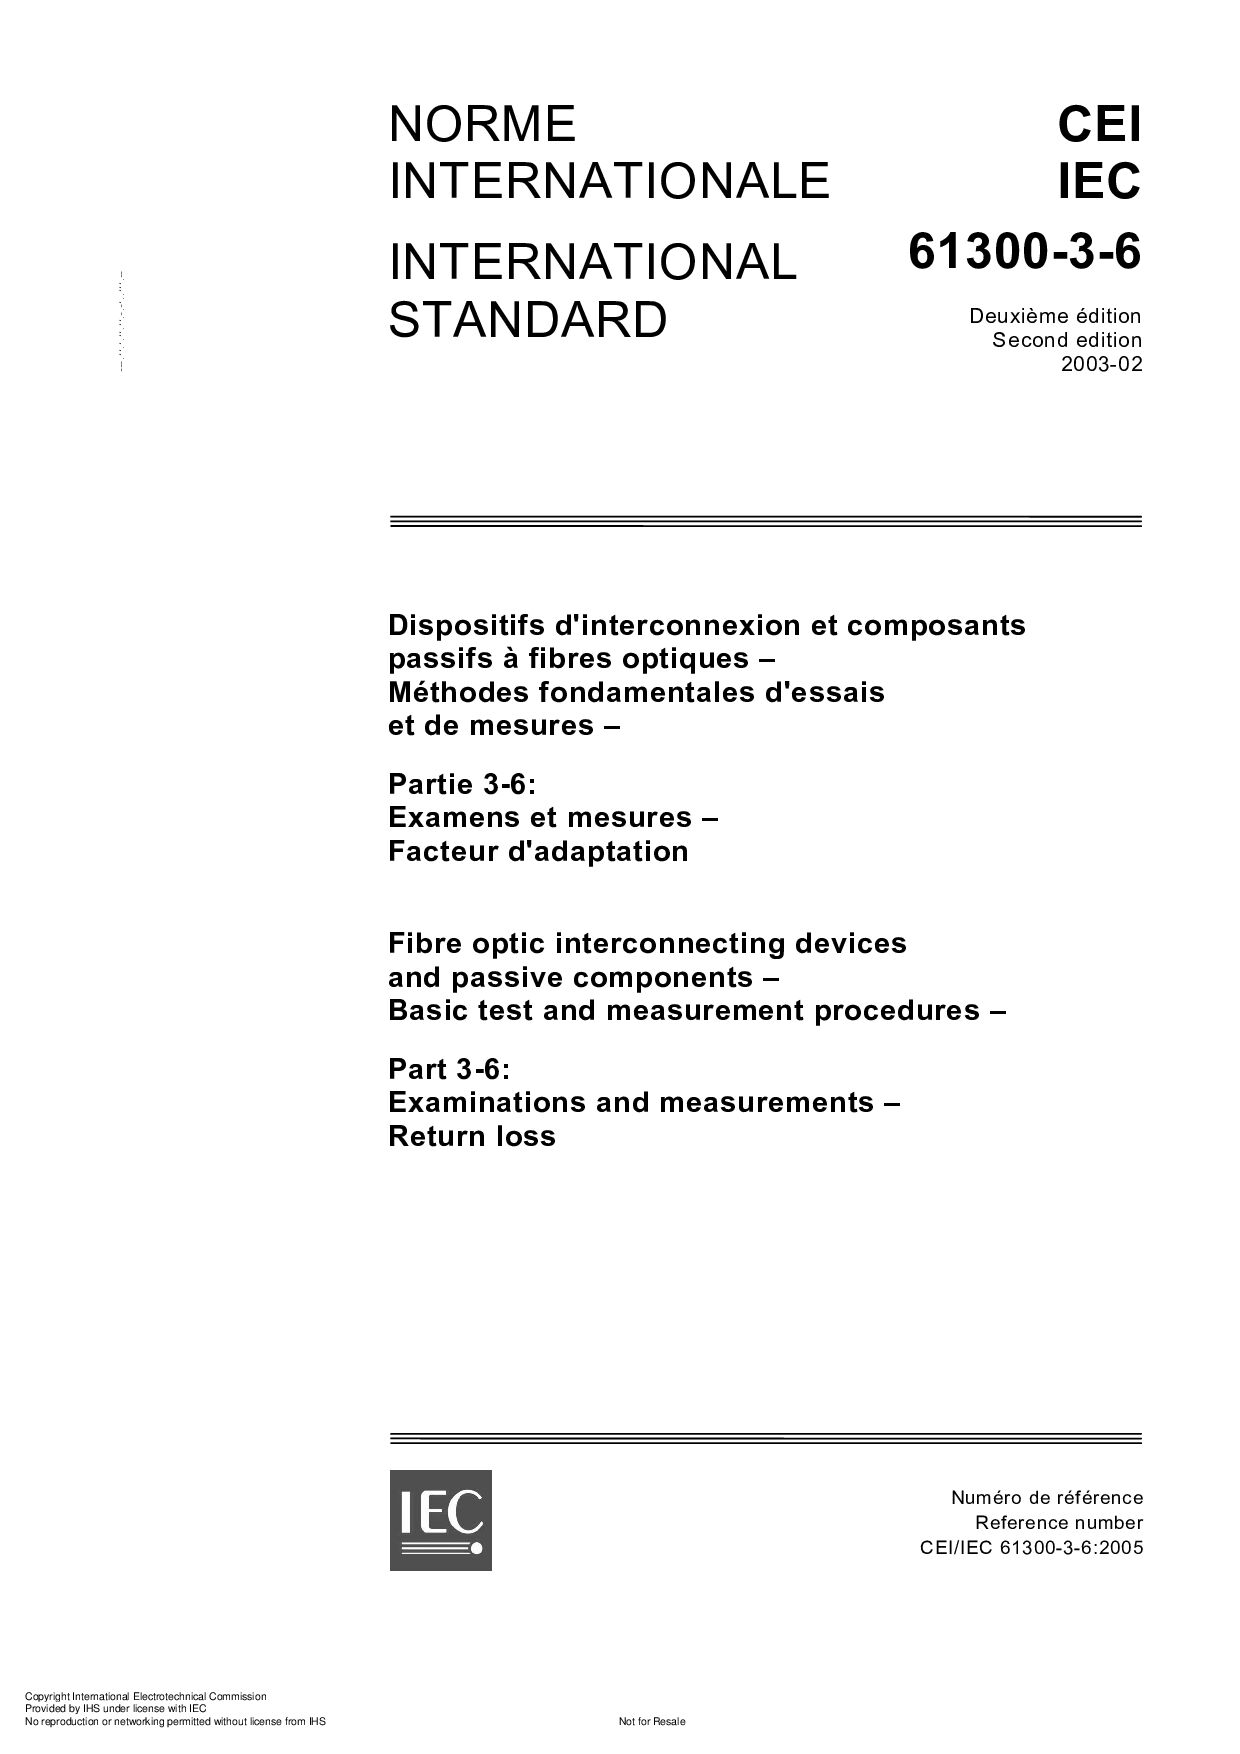 IEC 61300-3-6-2003